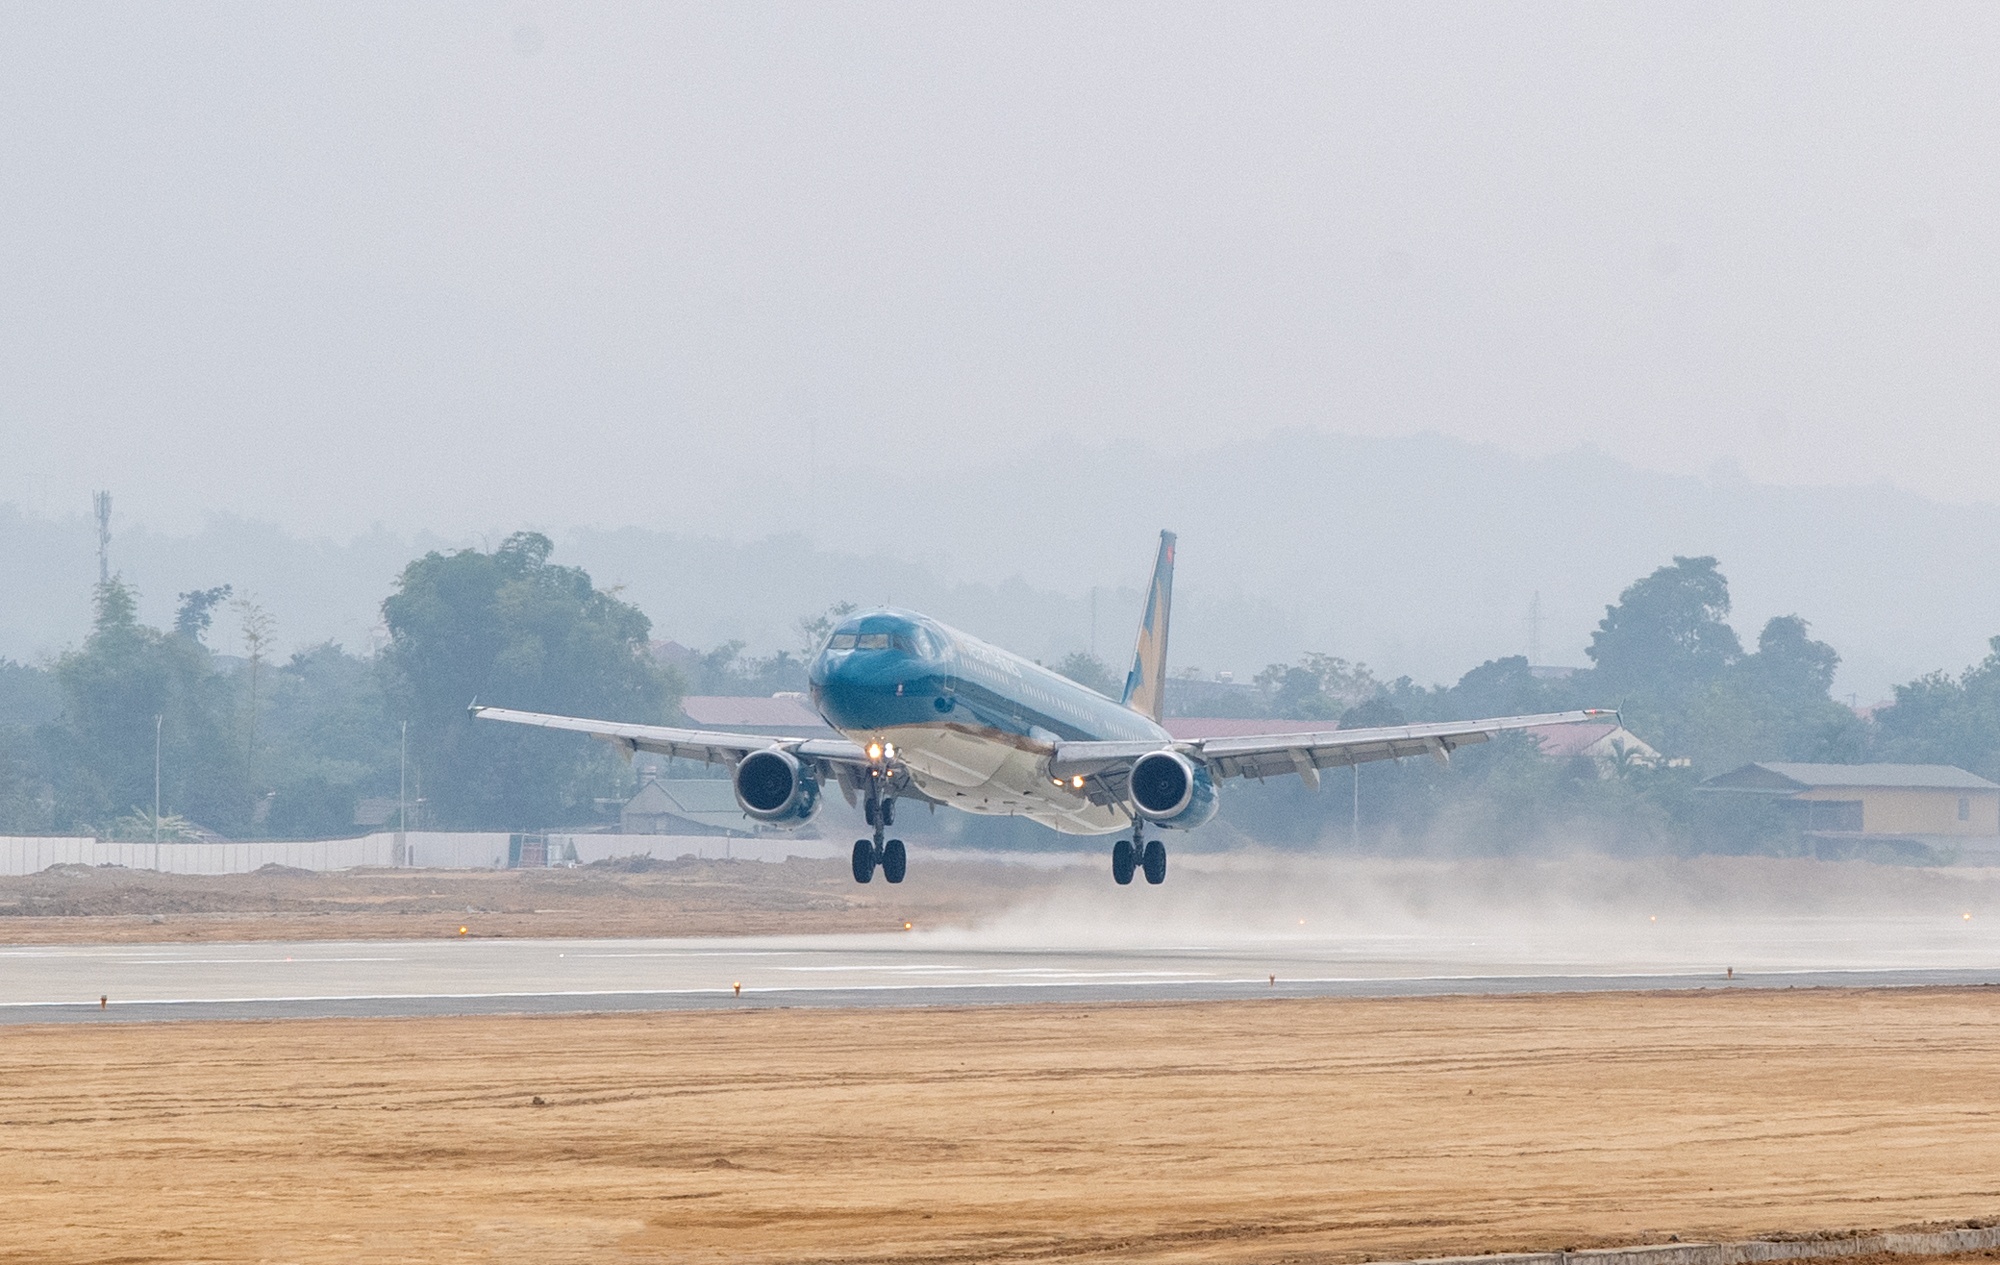 Hãng cũng đã đưa máy bay phản lực hiện đại Airbus A321 vào khai thác trên đường bay Hà Nội - Điện Biên 